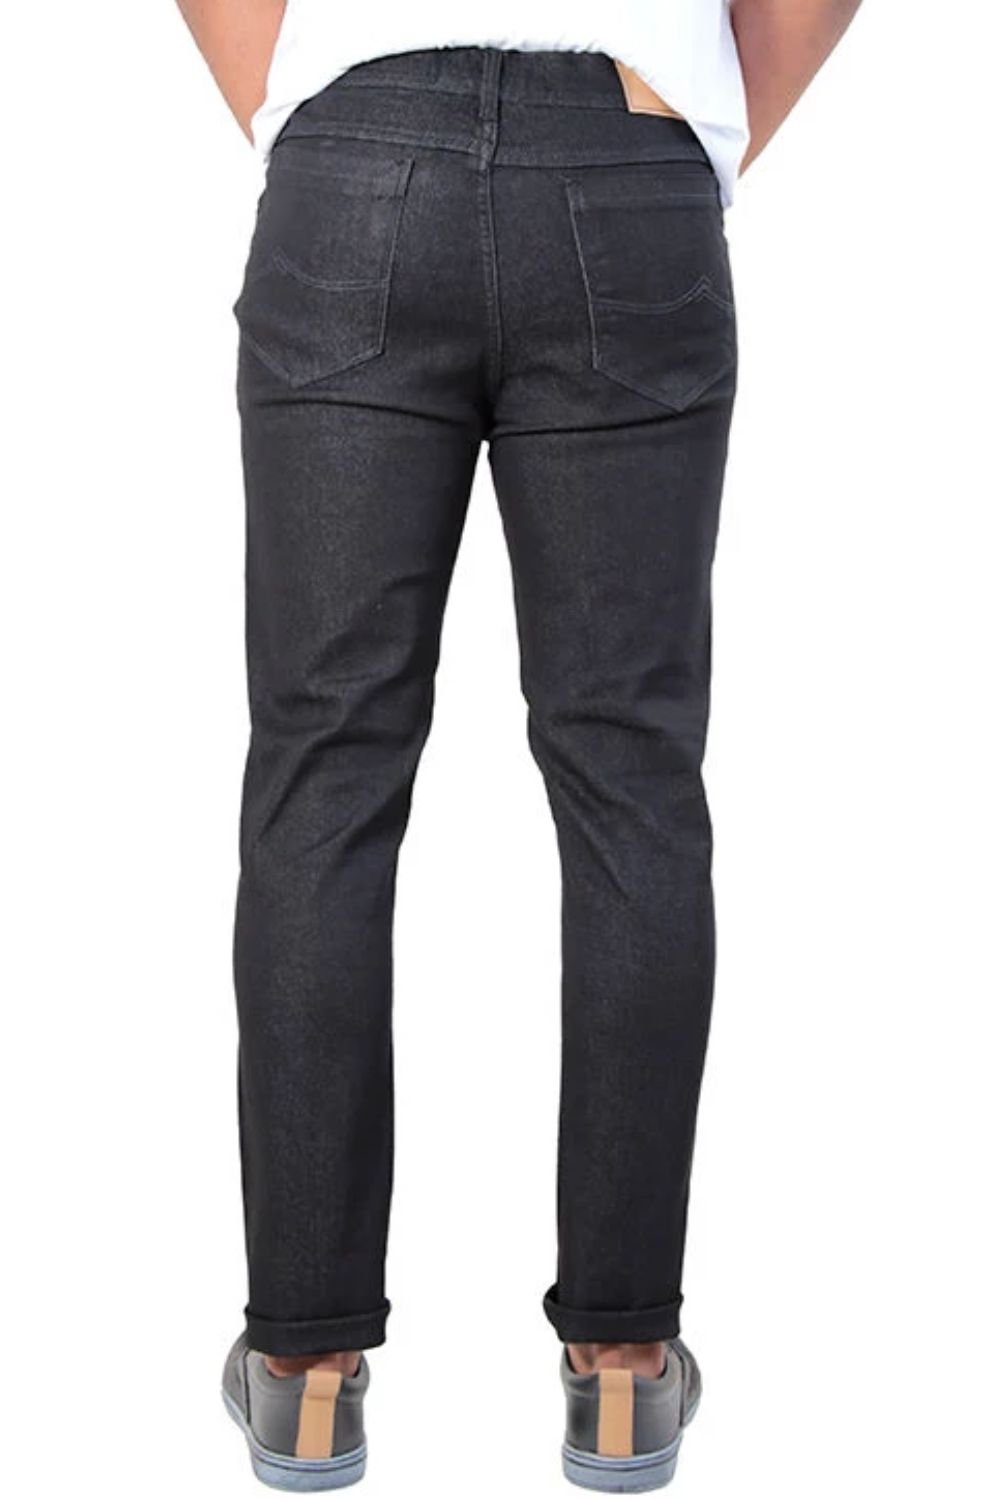 calca jeans slim black com elastano five pockets conceito prisma det 4